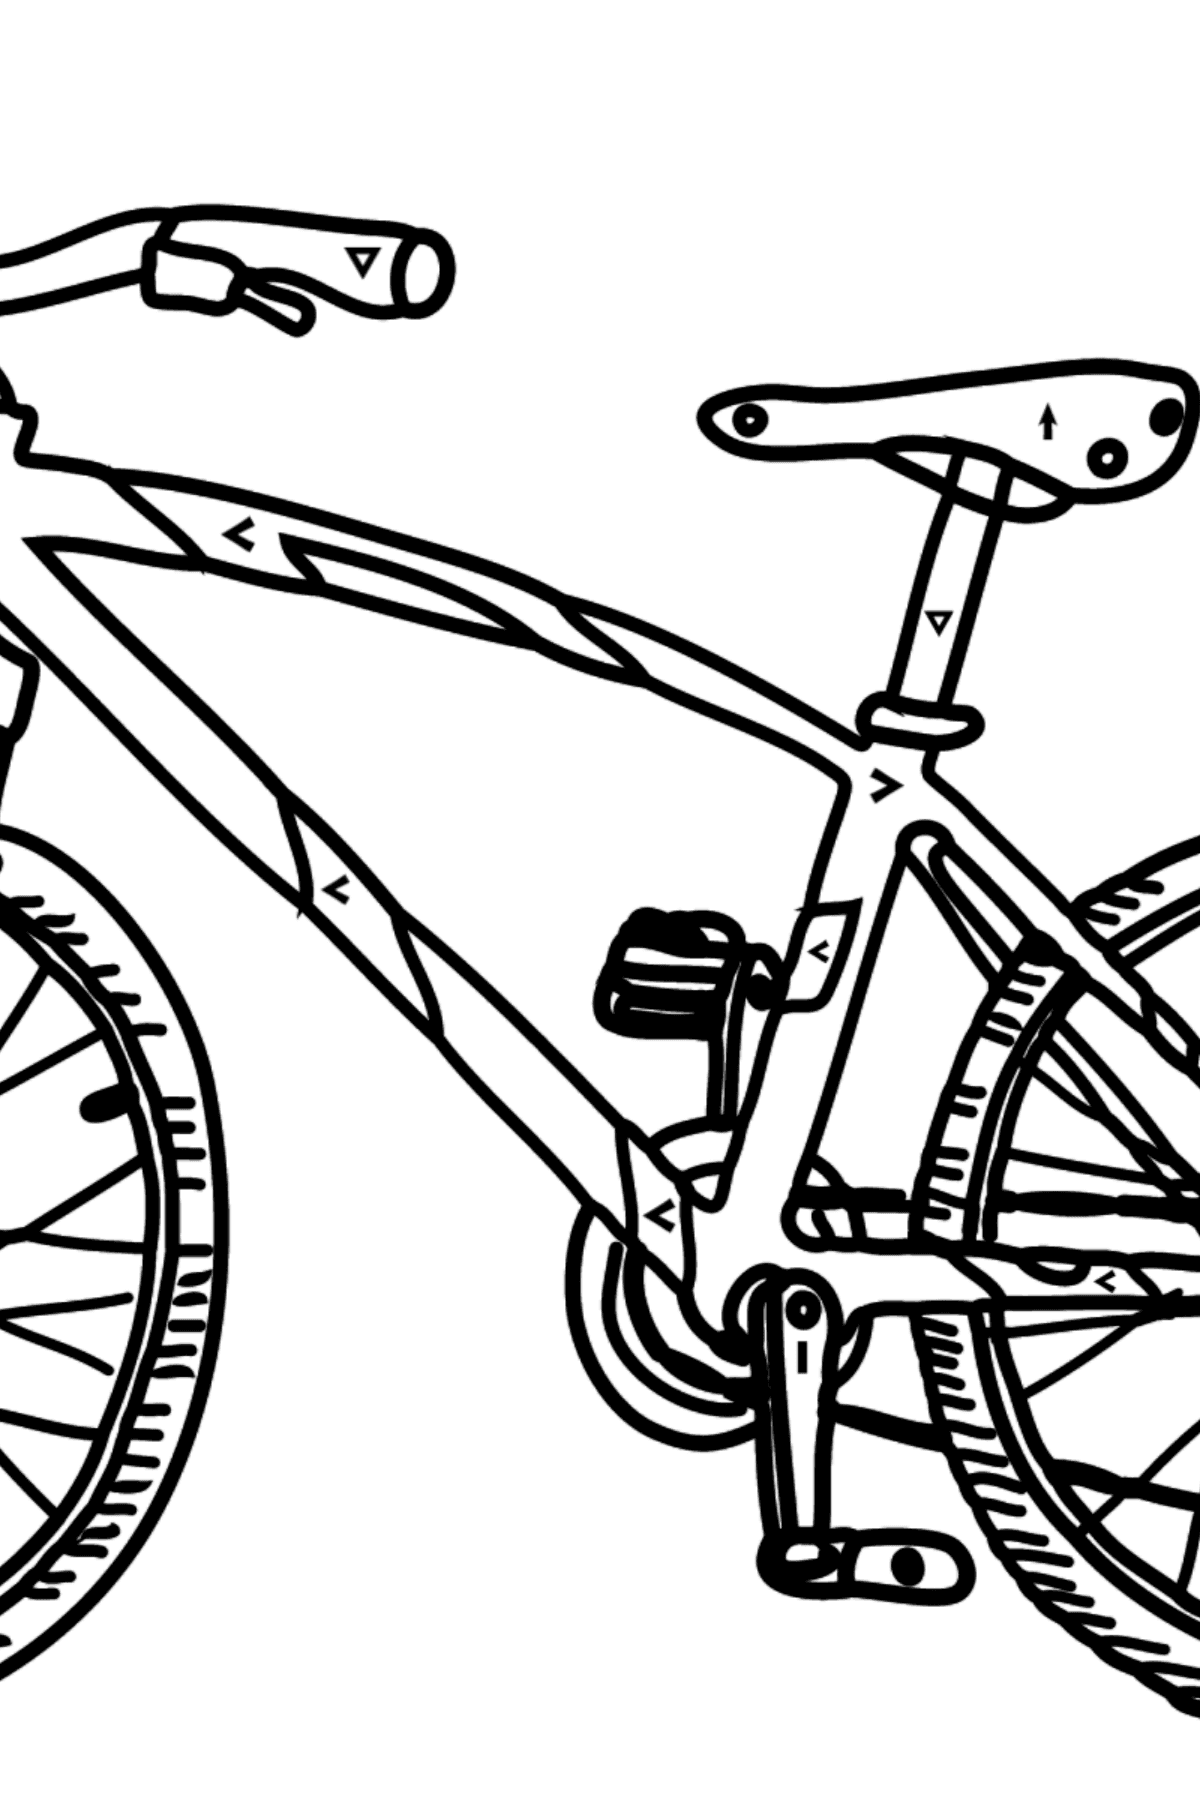 Desenho de bicicleta esportiva para colorir - Colorir por Símbolos para Crianças